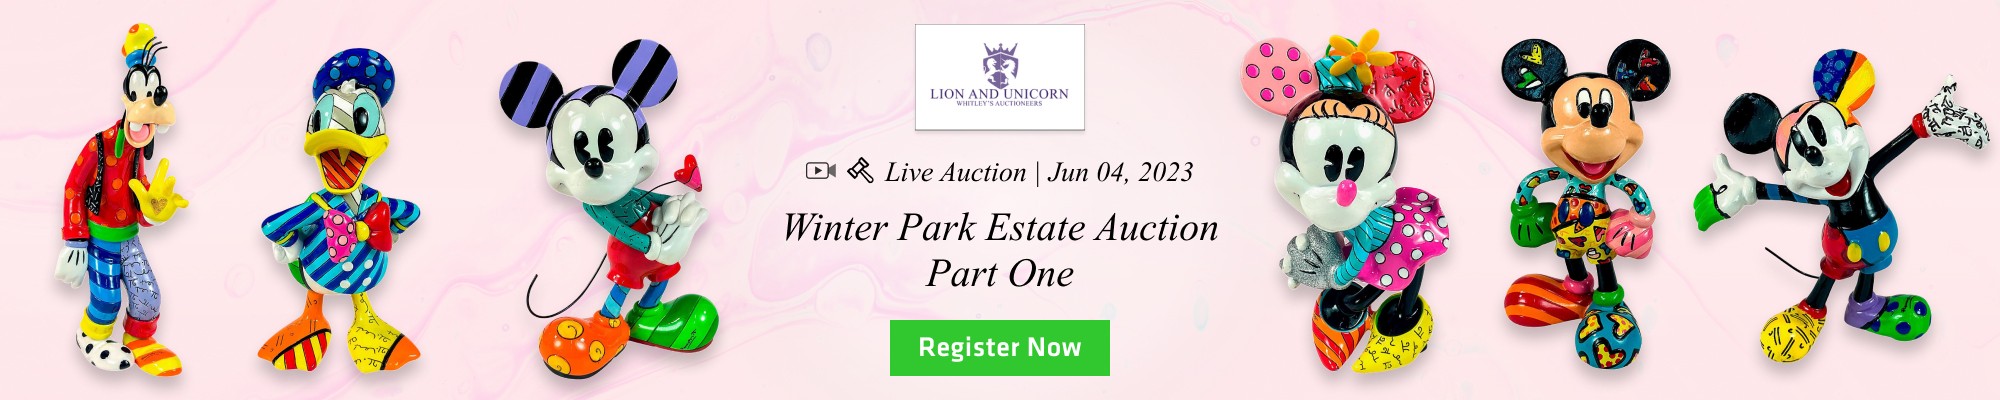 Winter Park Estate Auction Part One